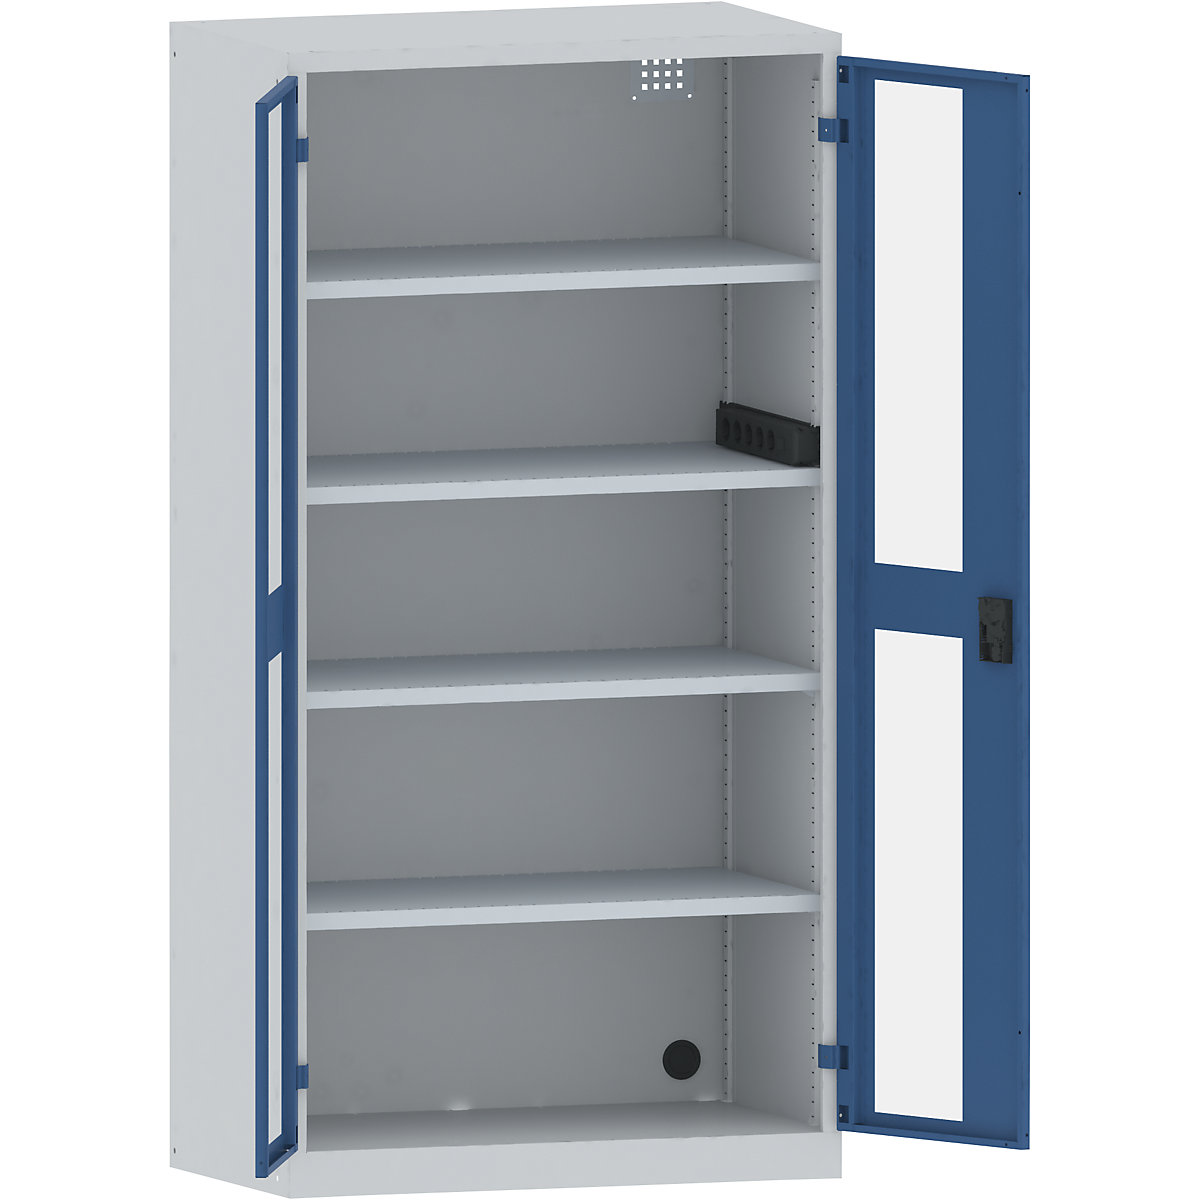 LISTA – Skříň pro nabíjení akumulátorů, 4 police, dveře s okénkem, boční zásuvková lišta, šedá / modrá